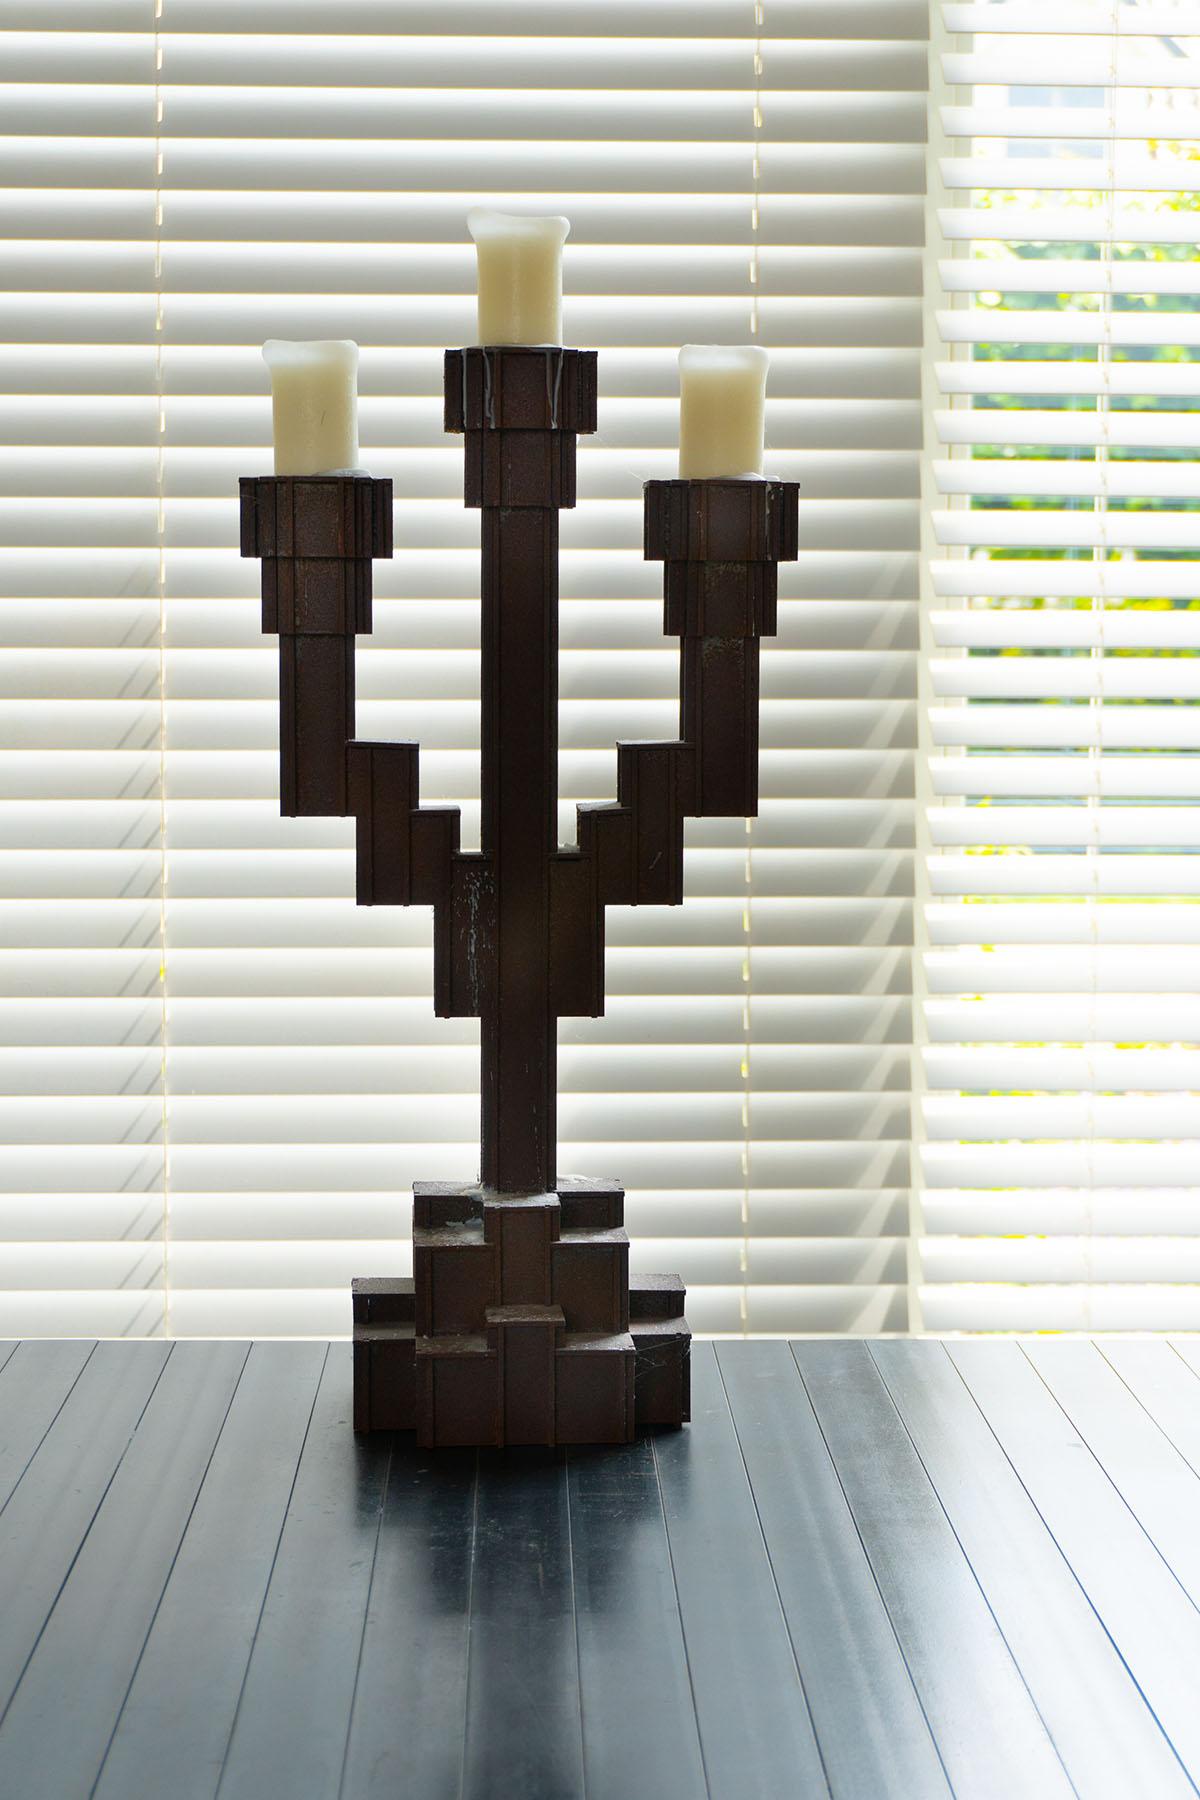 No Screw No Glue est une gamme emblématique de meubles et d'objets conçus par Joost Van Bleiswijk, dont les composants sont découpés au laser et assemblés par emboîtement. Comme leur nom l'indique, ces pièces ne nécessitent pas de vis, de colle ou